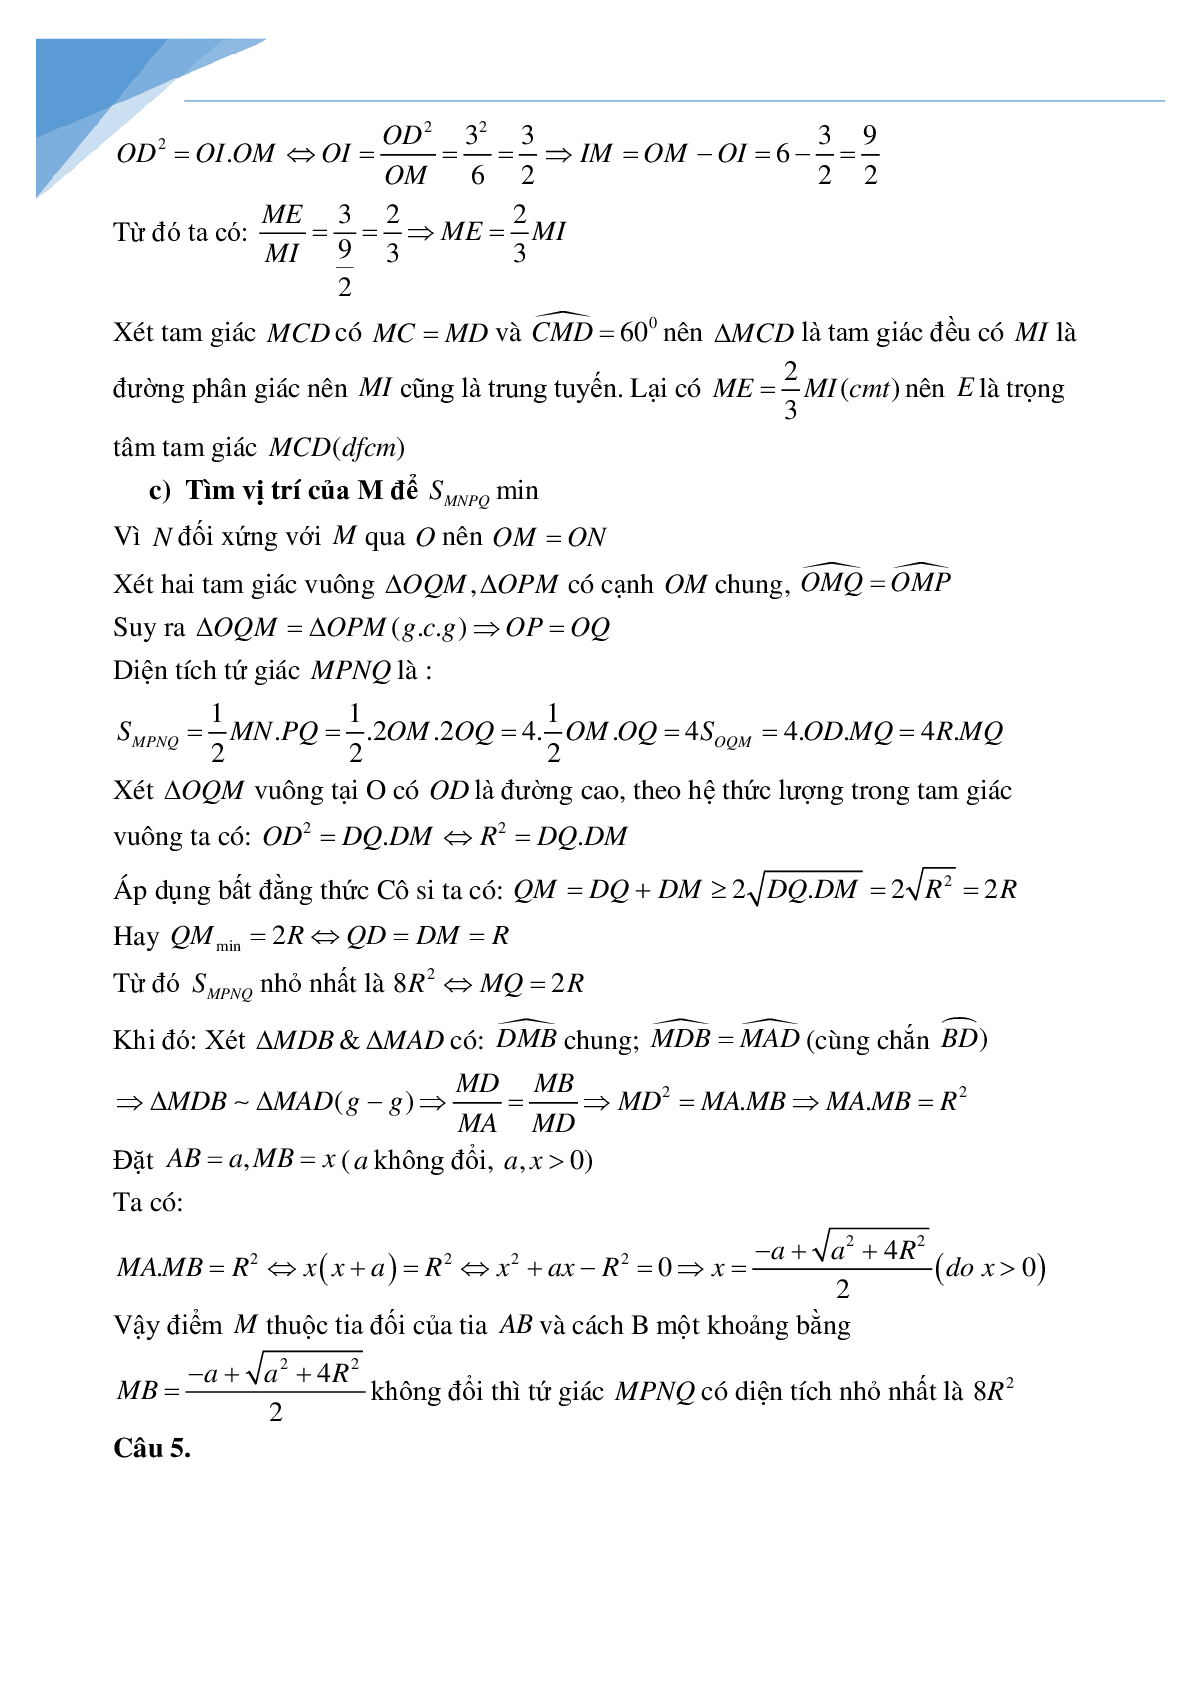 Bộ đề toán vào lớp 10 tỉnh Bắc Giang (trang 7)